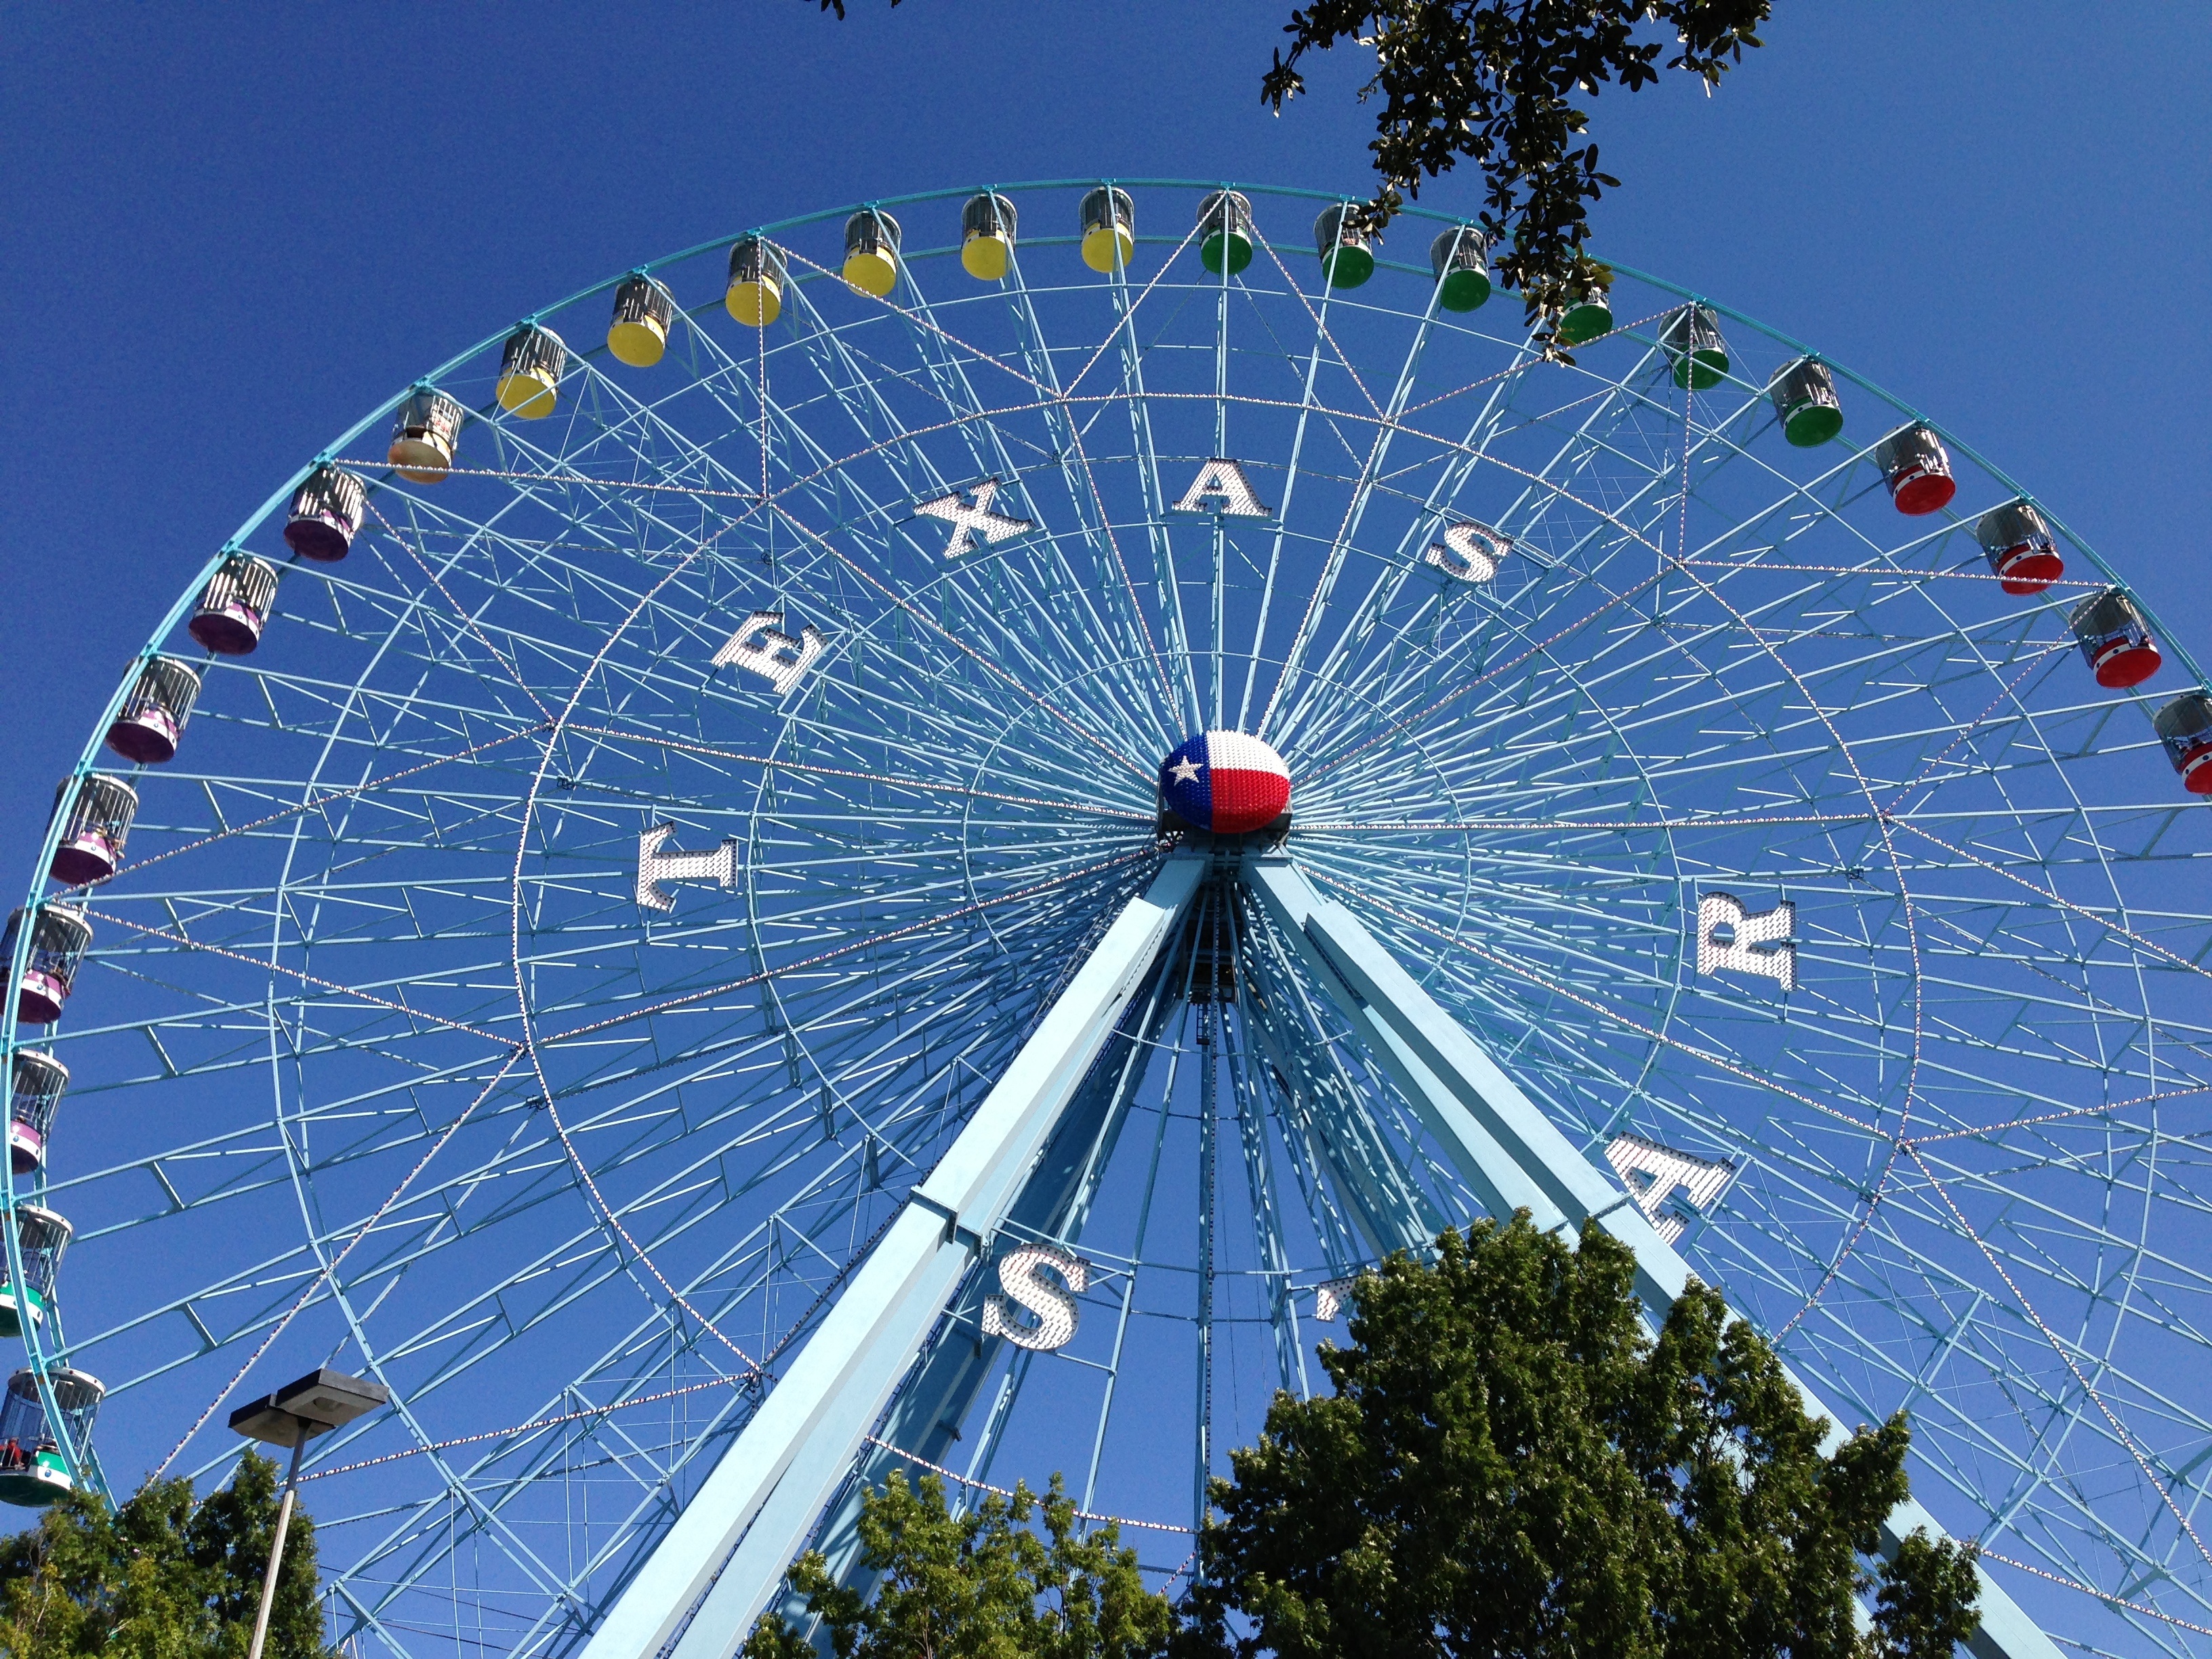 Description Texas State Fair Ferris Wheel Jpg